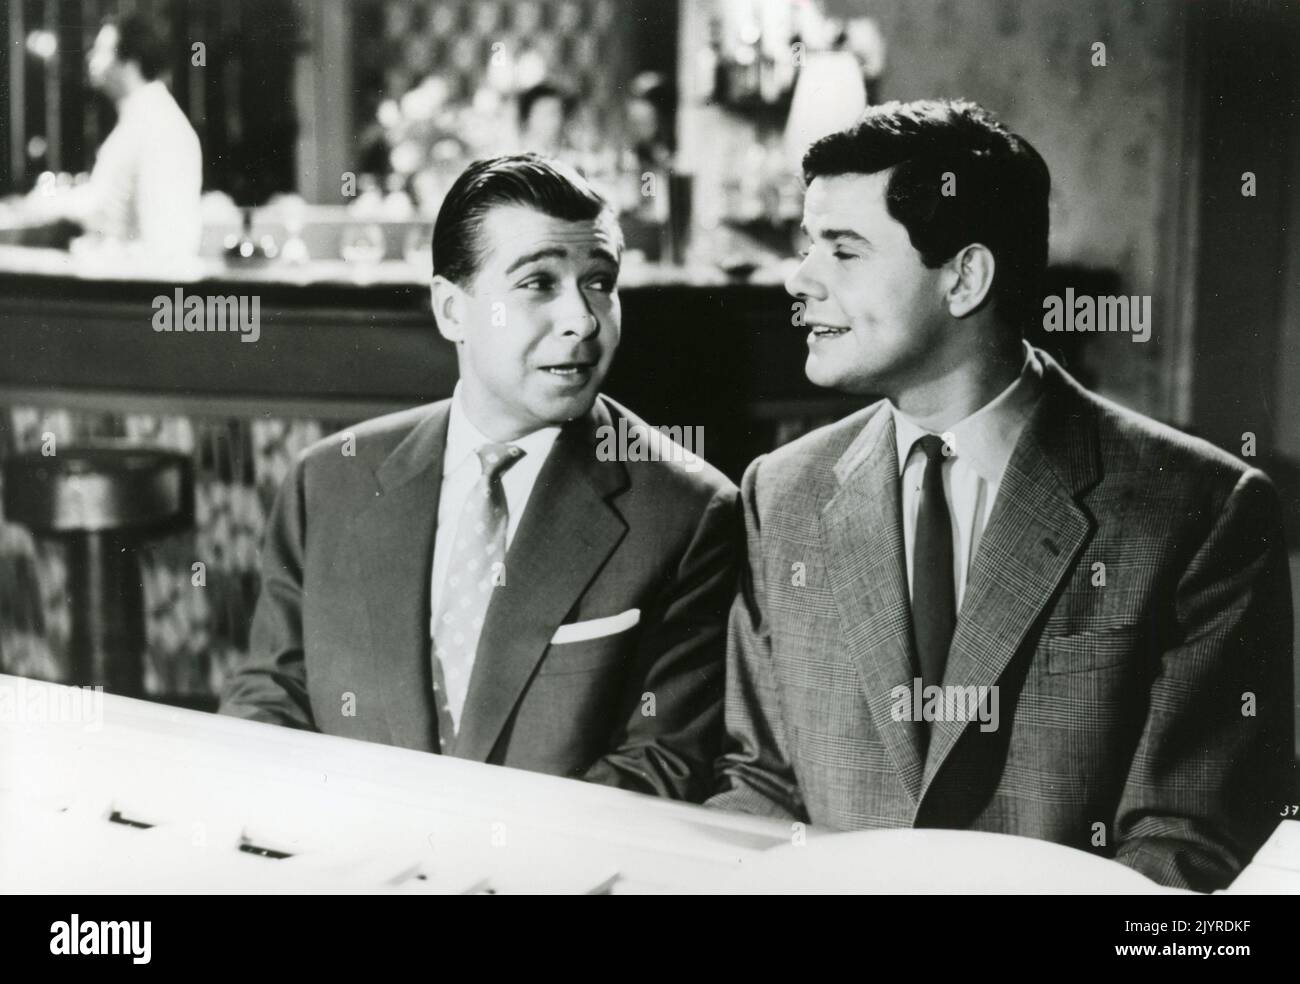 Actores Bully Buhlan y Walter Giller en la película Ich und meine Schwiegersohne, Alemania 1956 Foto de stock